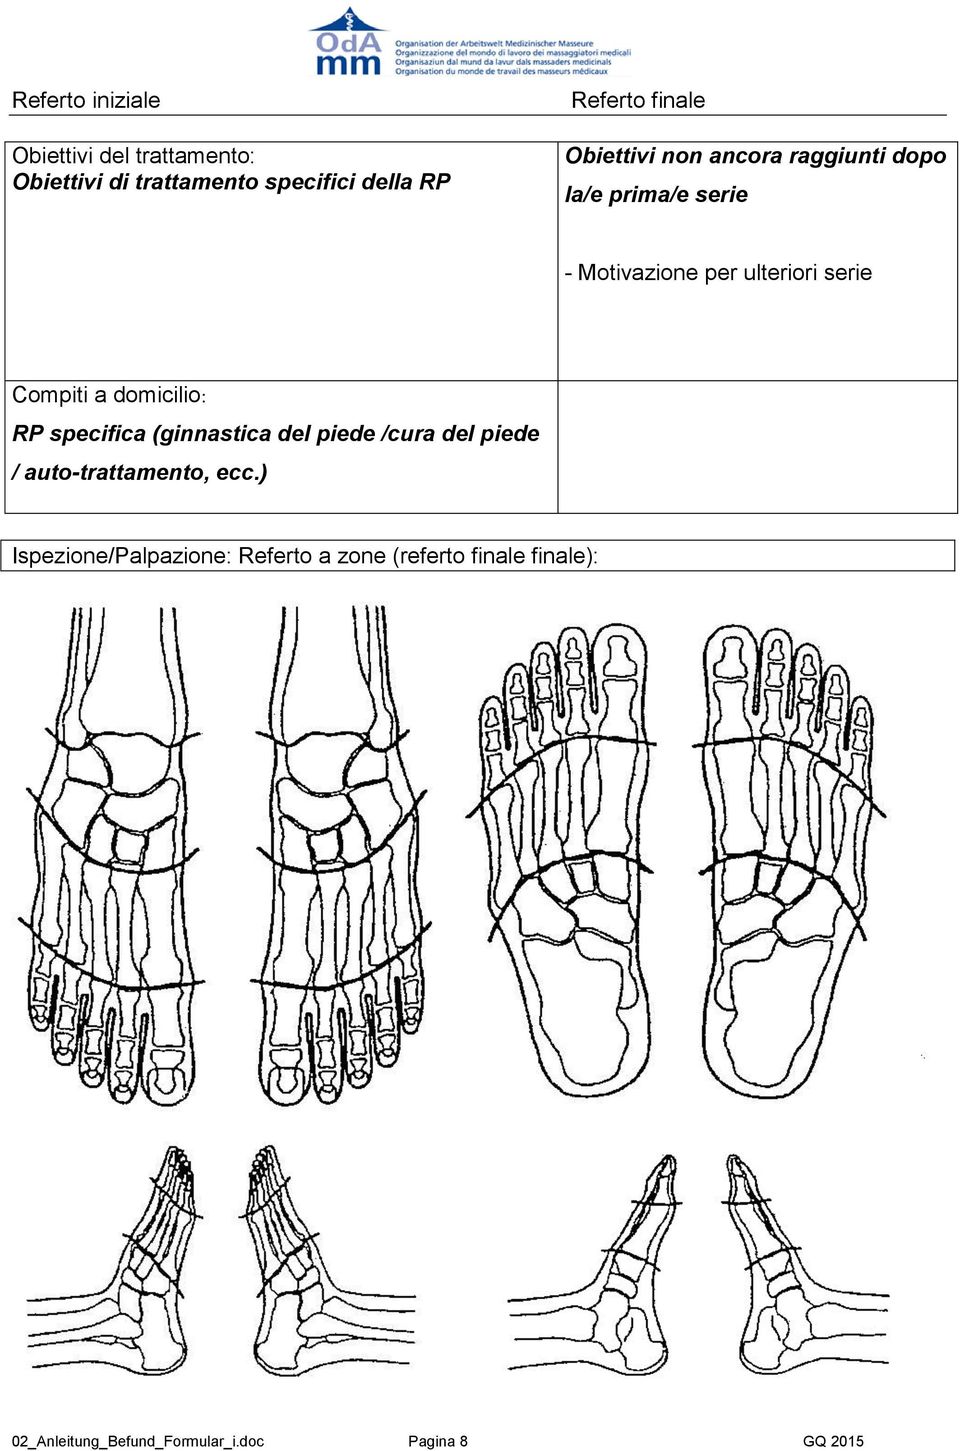 Compiti a domicilio: RP specifica (ginnastica del piede /cura del piede / auto-trattamento, ecc.